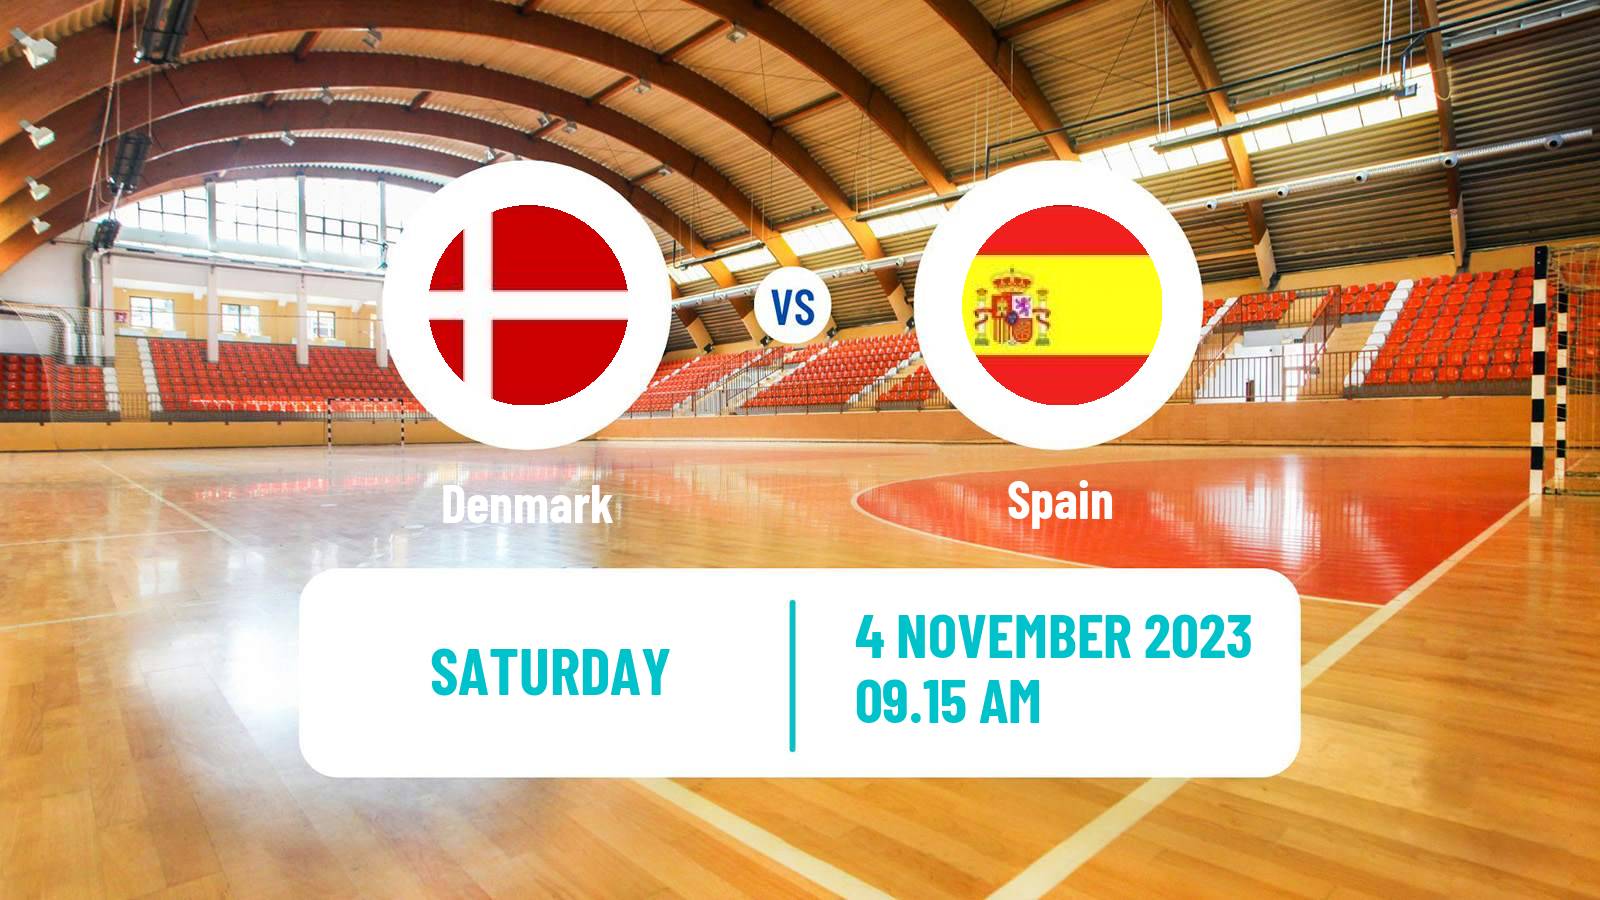 Handball Golden League Handball - Norway Denmark - Spain